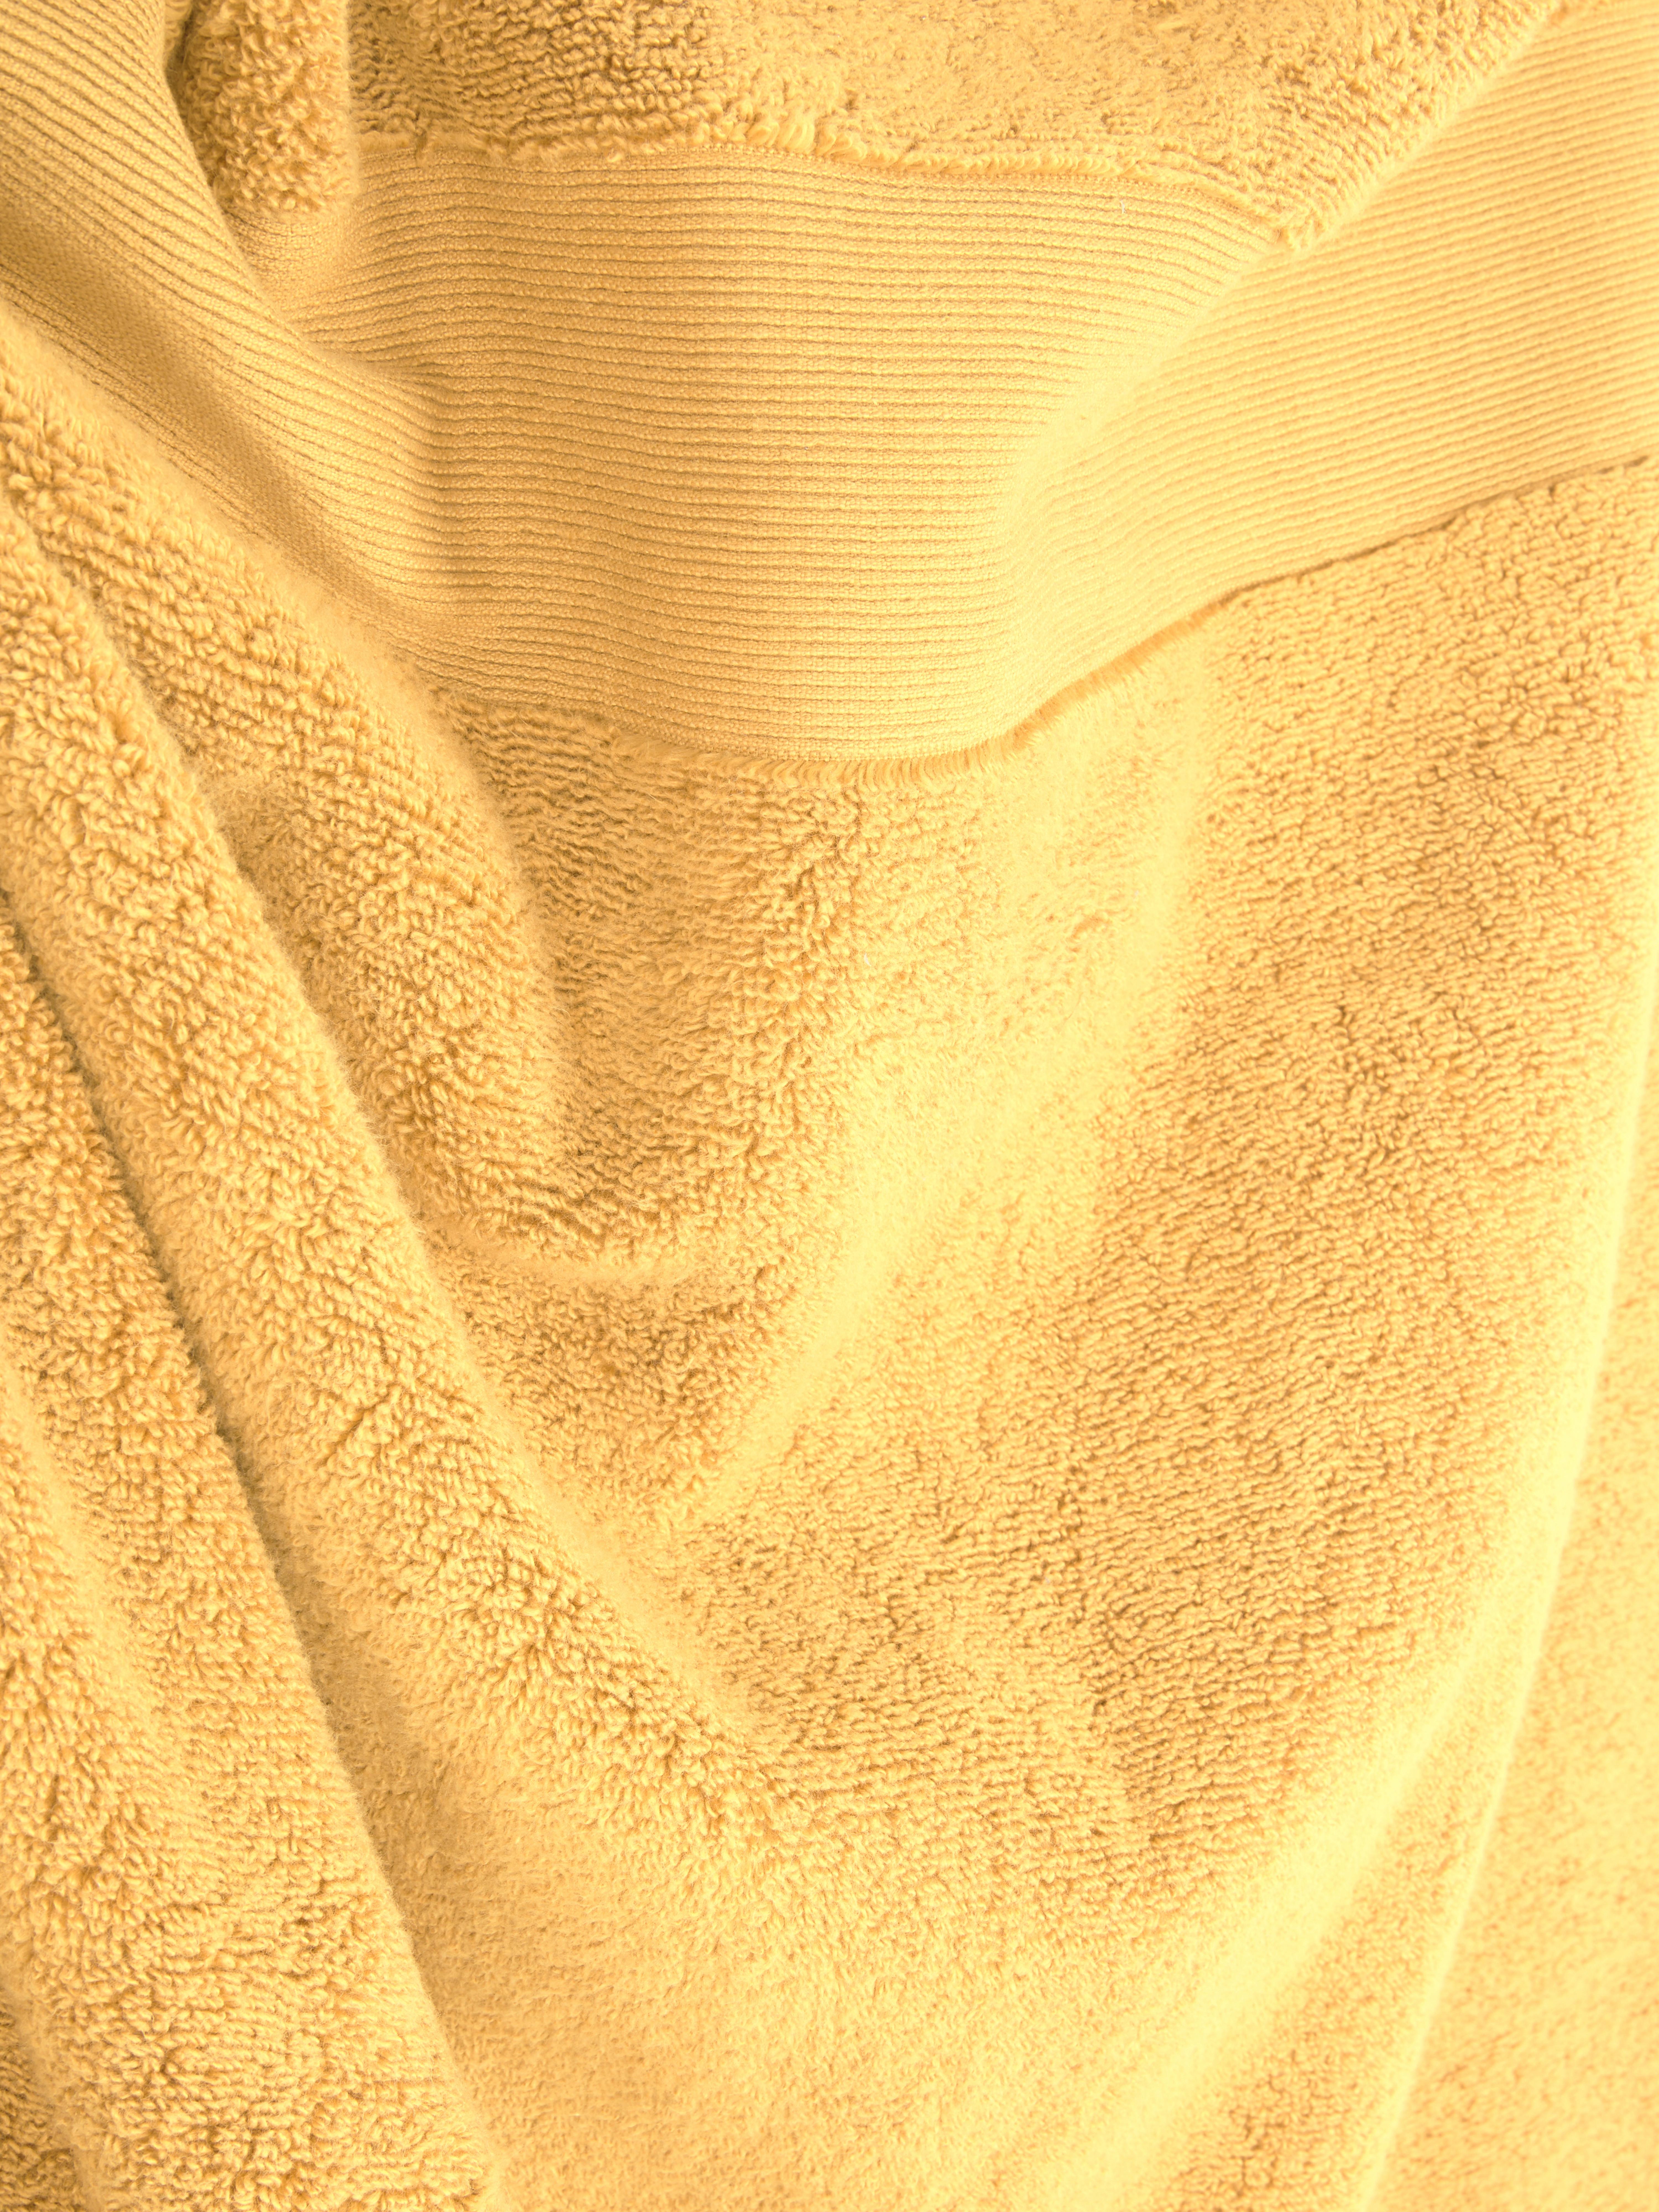 Primark tiene las toallas extra grandes de algodón, para envolverte al  salir de la ducha, a muy buen precio